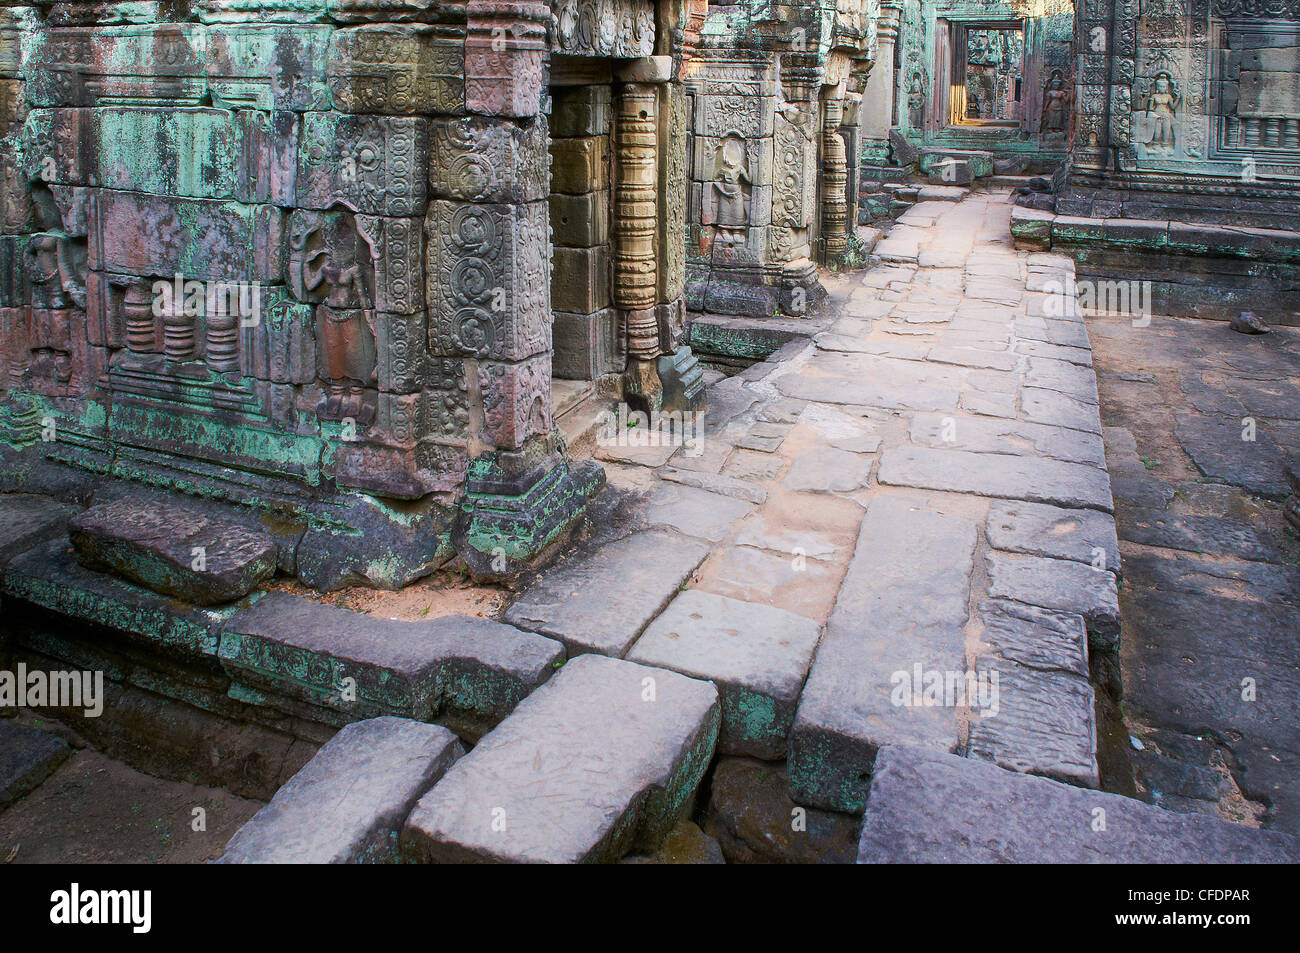 Preah Khan, tempio di Angkor, Sito Patrimonio Mondiale dell'UNESCO, Siem Reap, Cambogia, Indocina, Asia sud-orientale, Asia Foto Stock